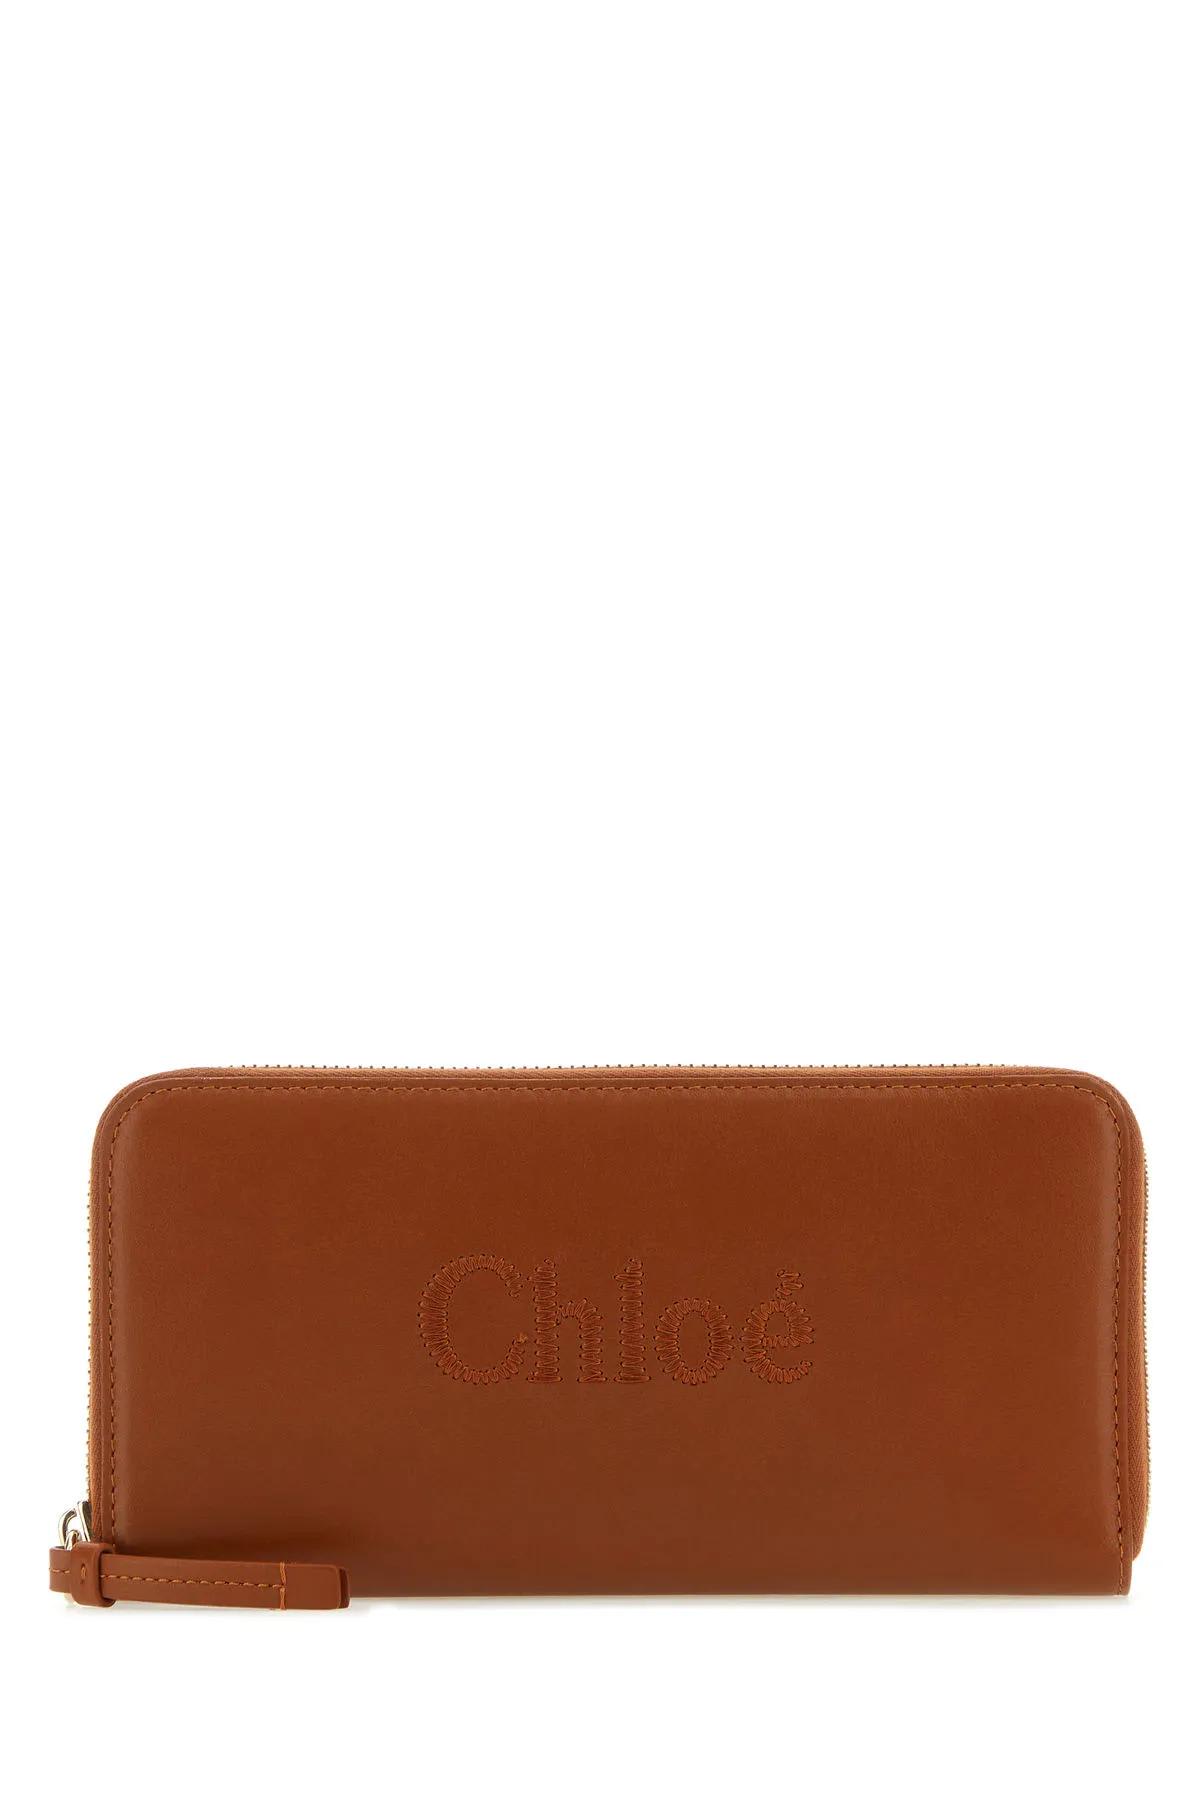 Chloé Caramel Nappa Leather Wallet In Marrone